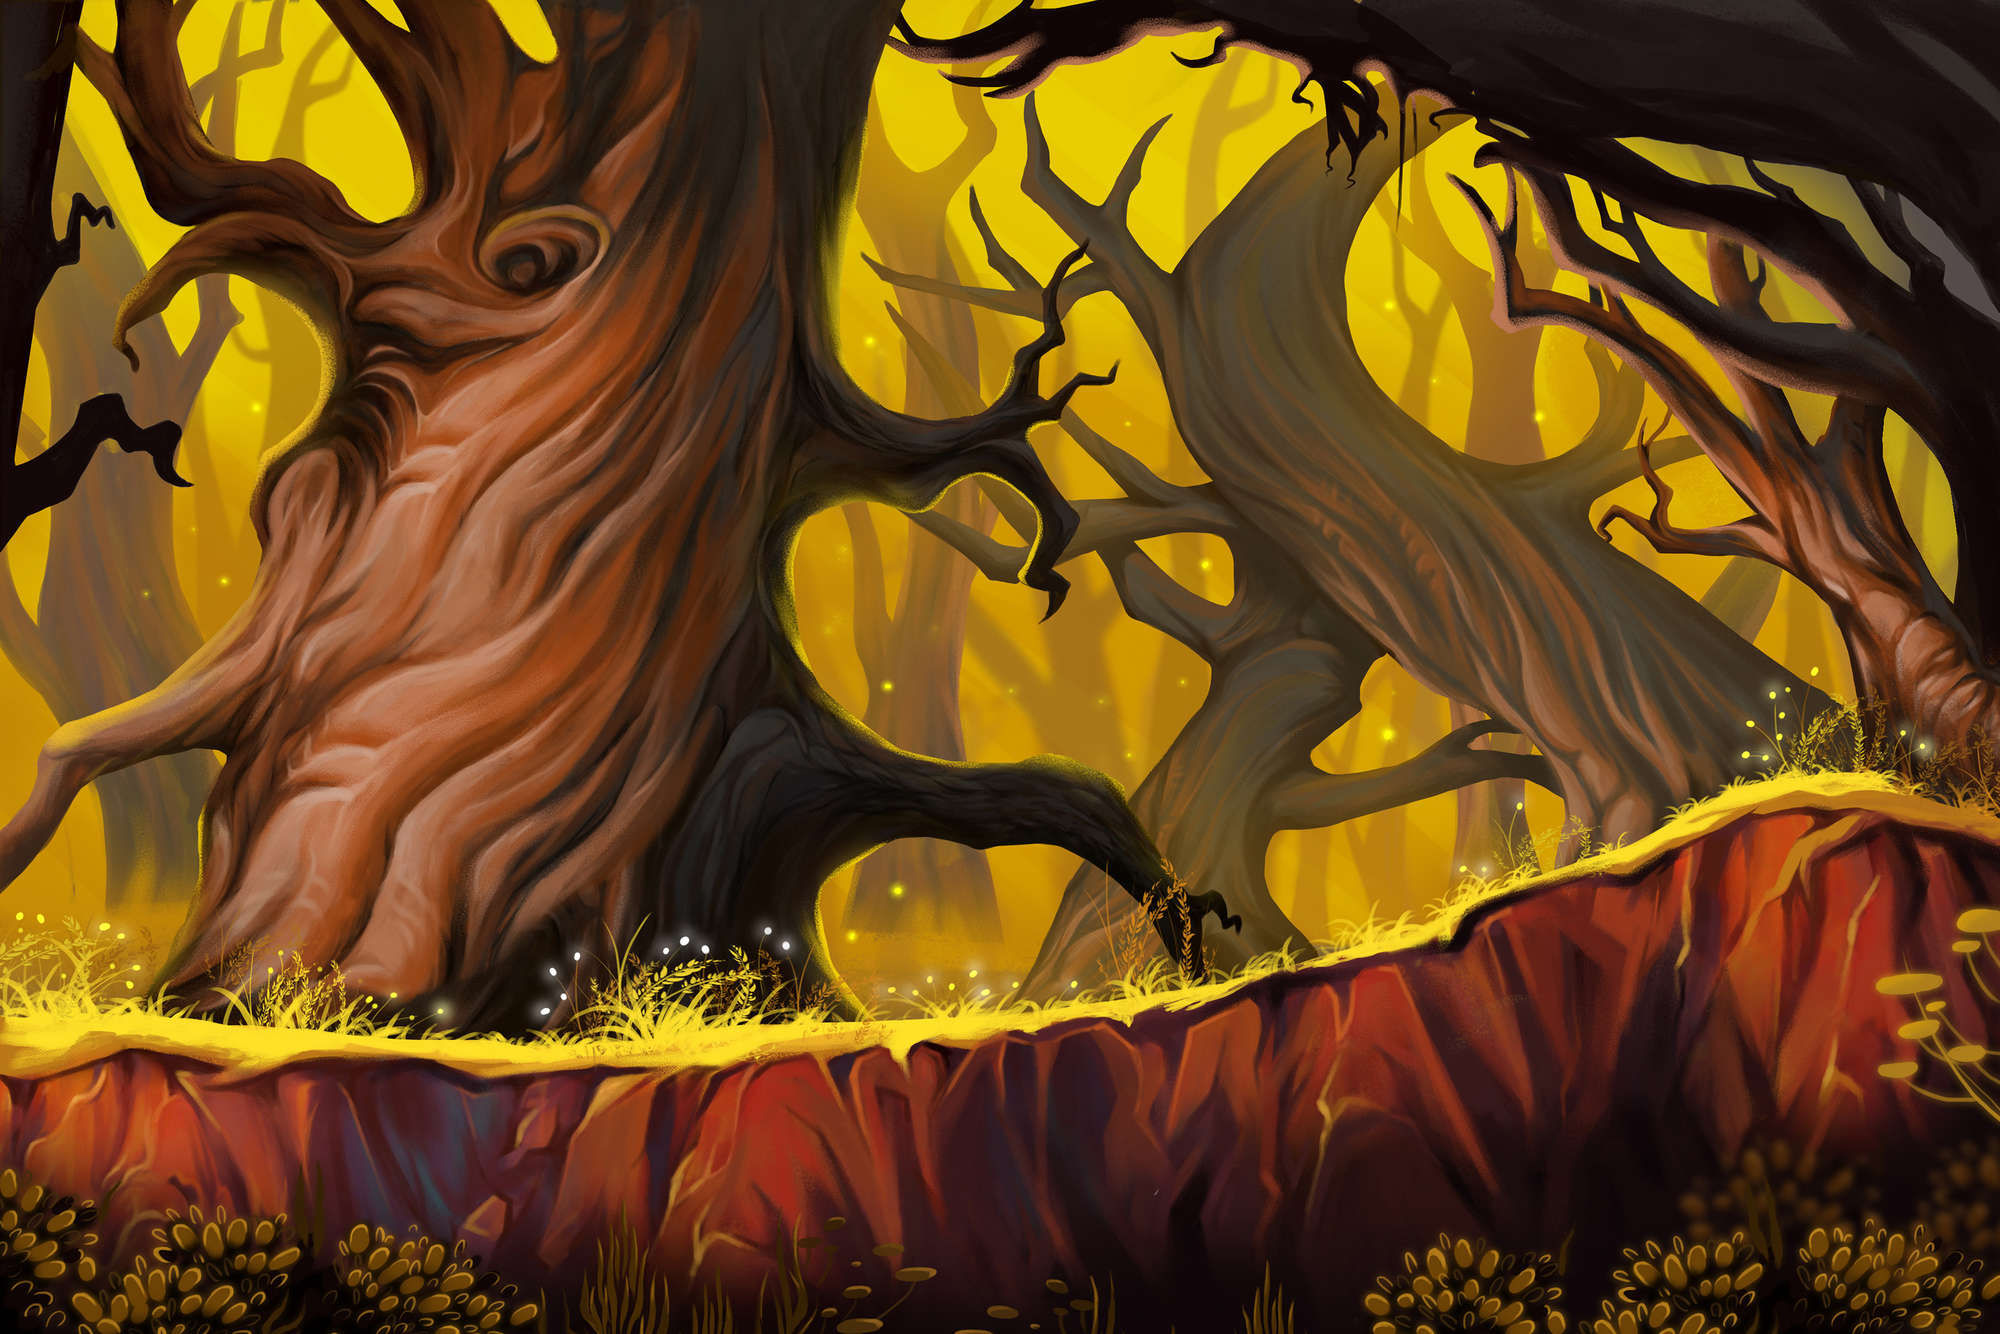             Papel pintado Fantsay motivo bosque místico sobre vellón liso nacarado
        